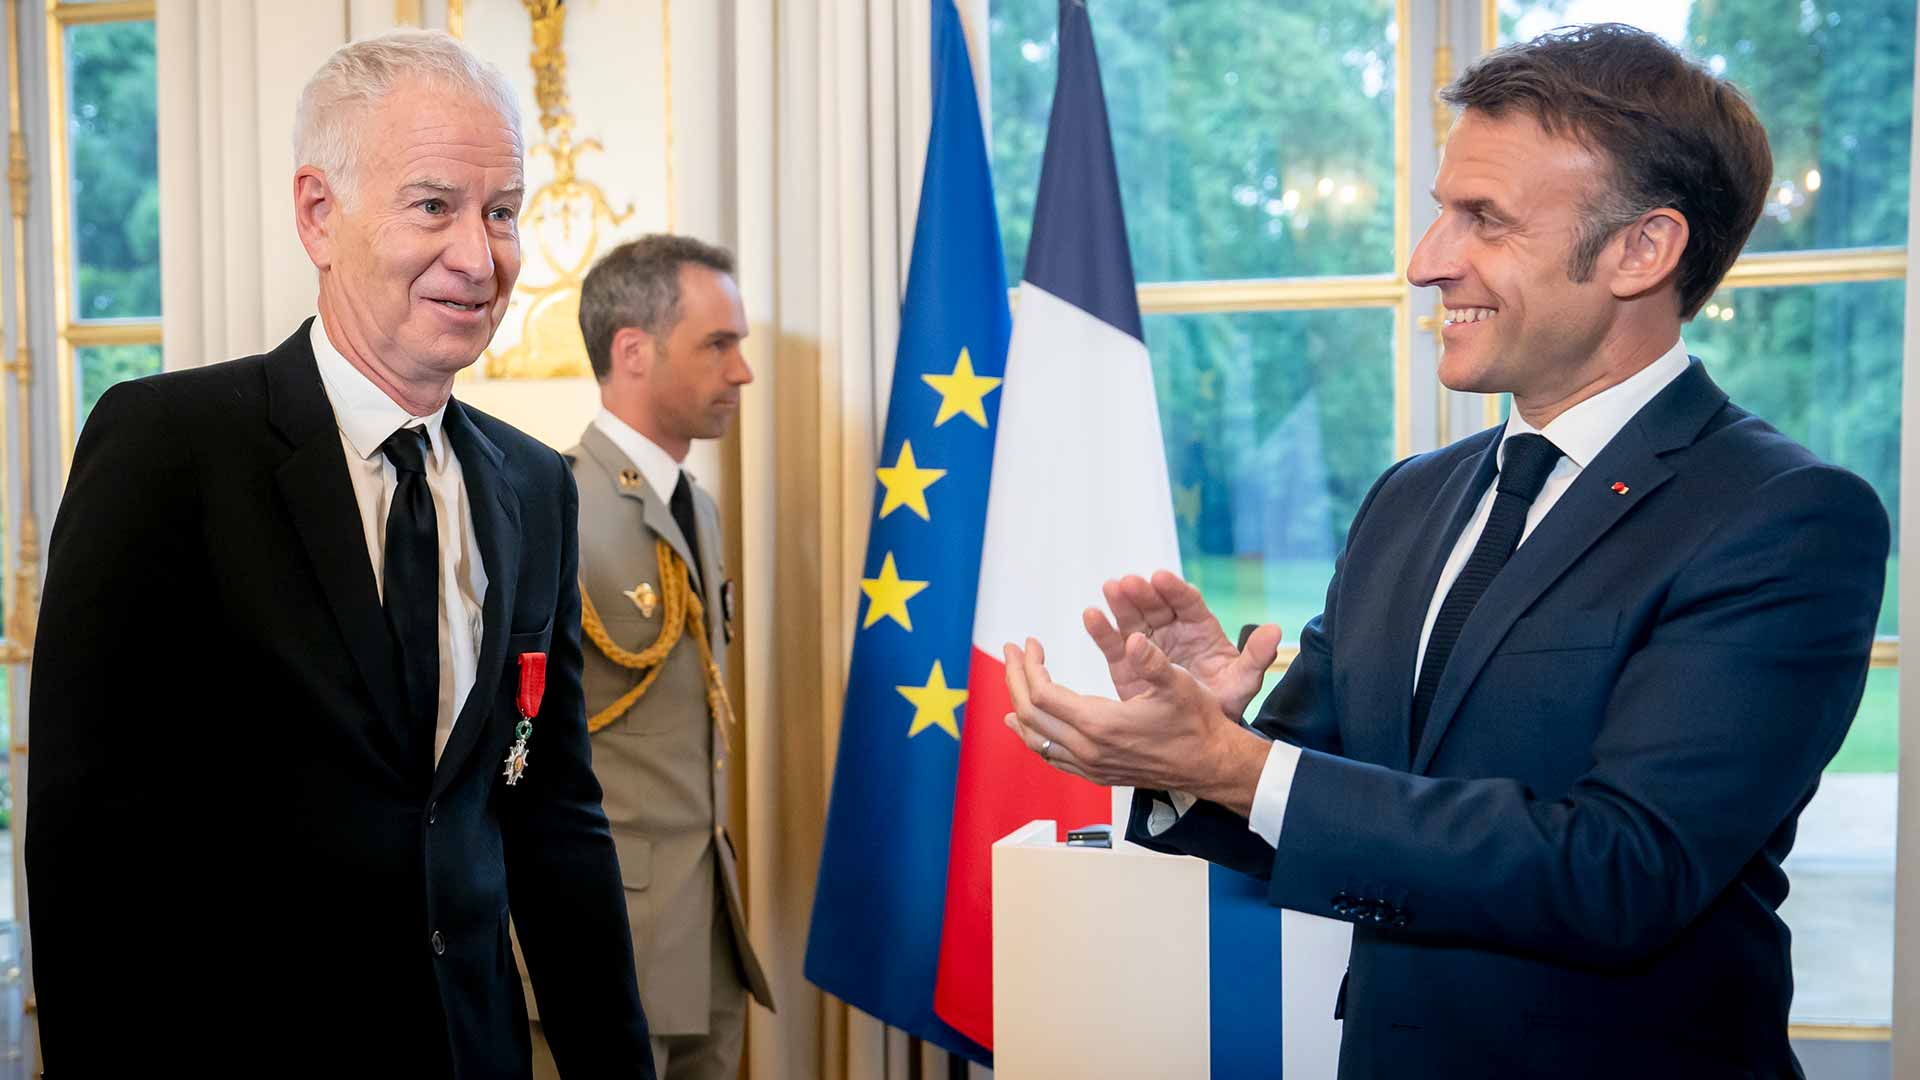 John McEnroe receives French Legion of Honour award from President Emmanuel Macron on Wednesday.